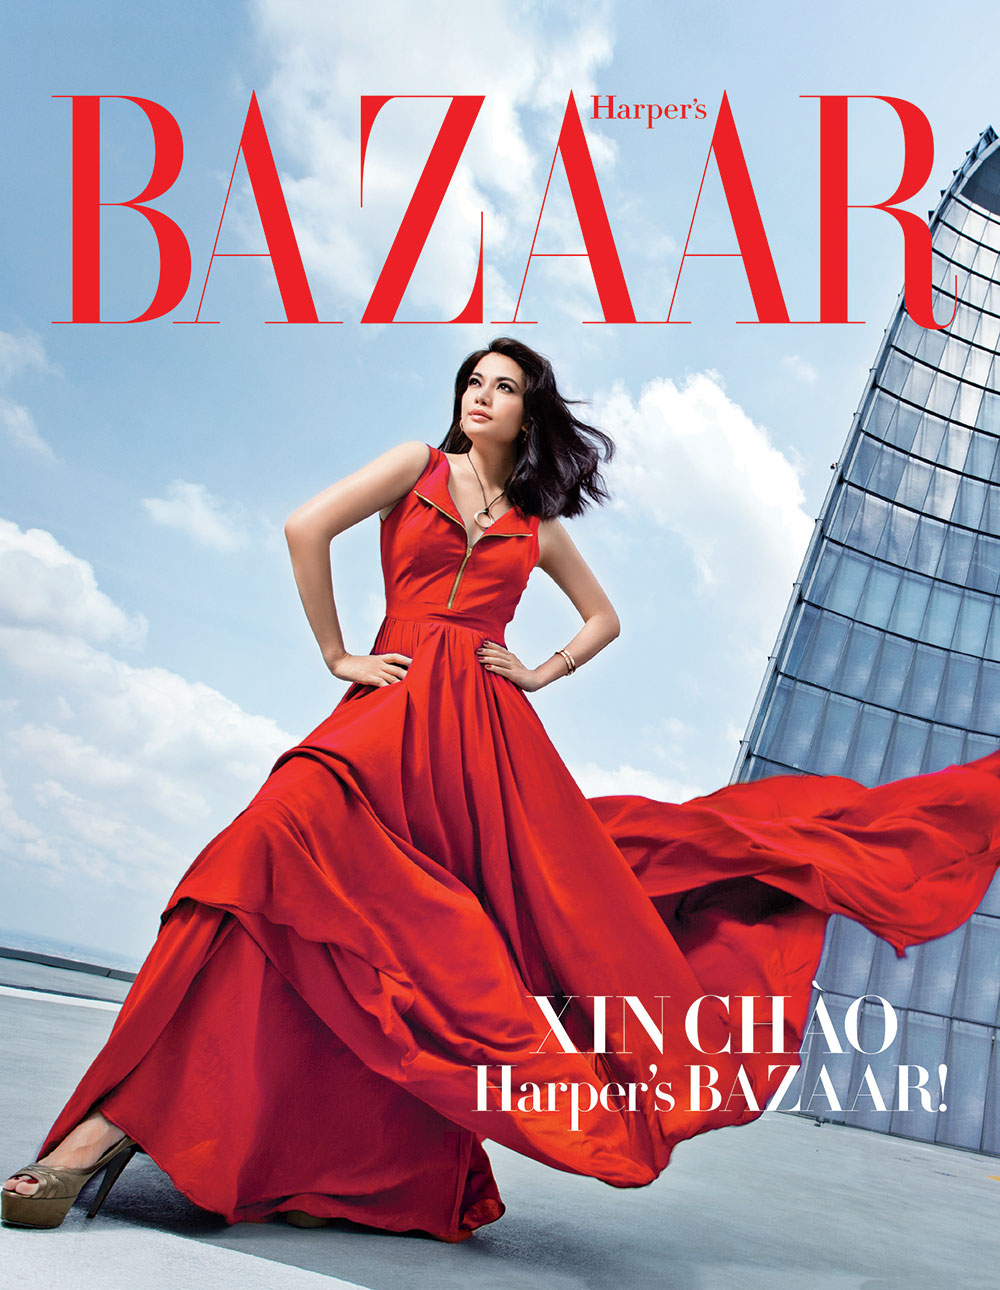 Trương Ngọc Ánh là gương mặt trang bìa đầu tiên của Harper's Bazaar tại Việt Nam